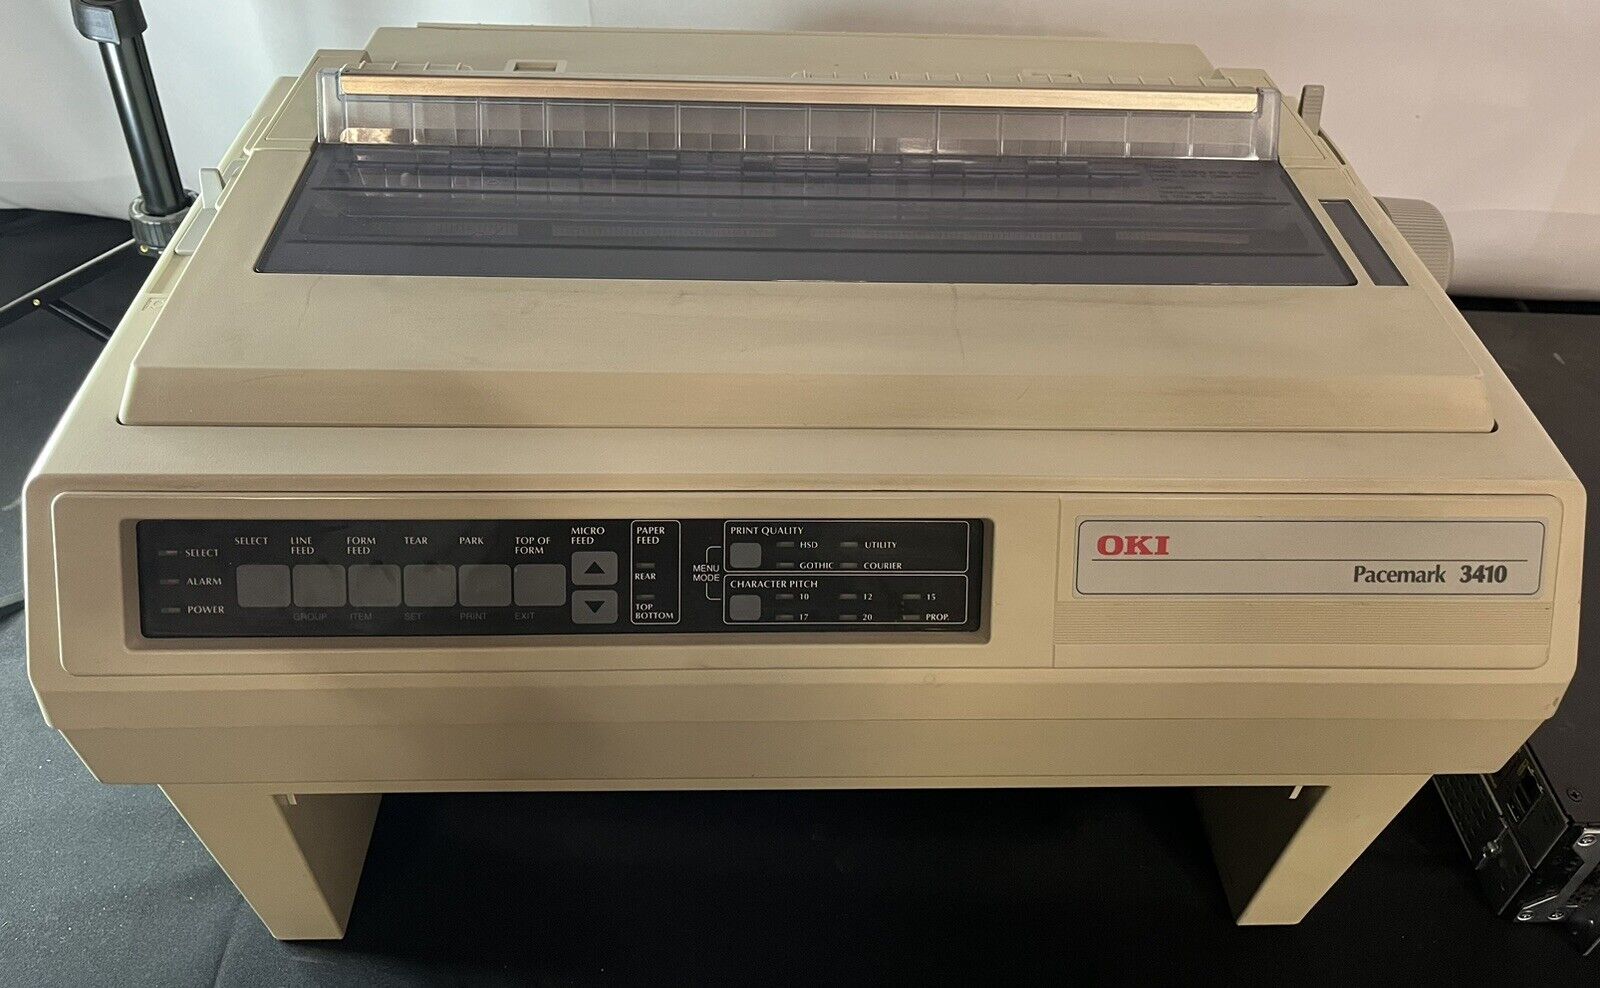 Vintage Oki Pacemark 3410 9-Pin Dot Matrix Printer Model GE8285A TURNS ON